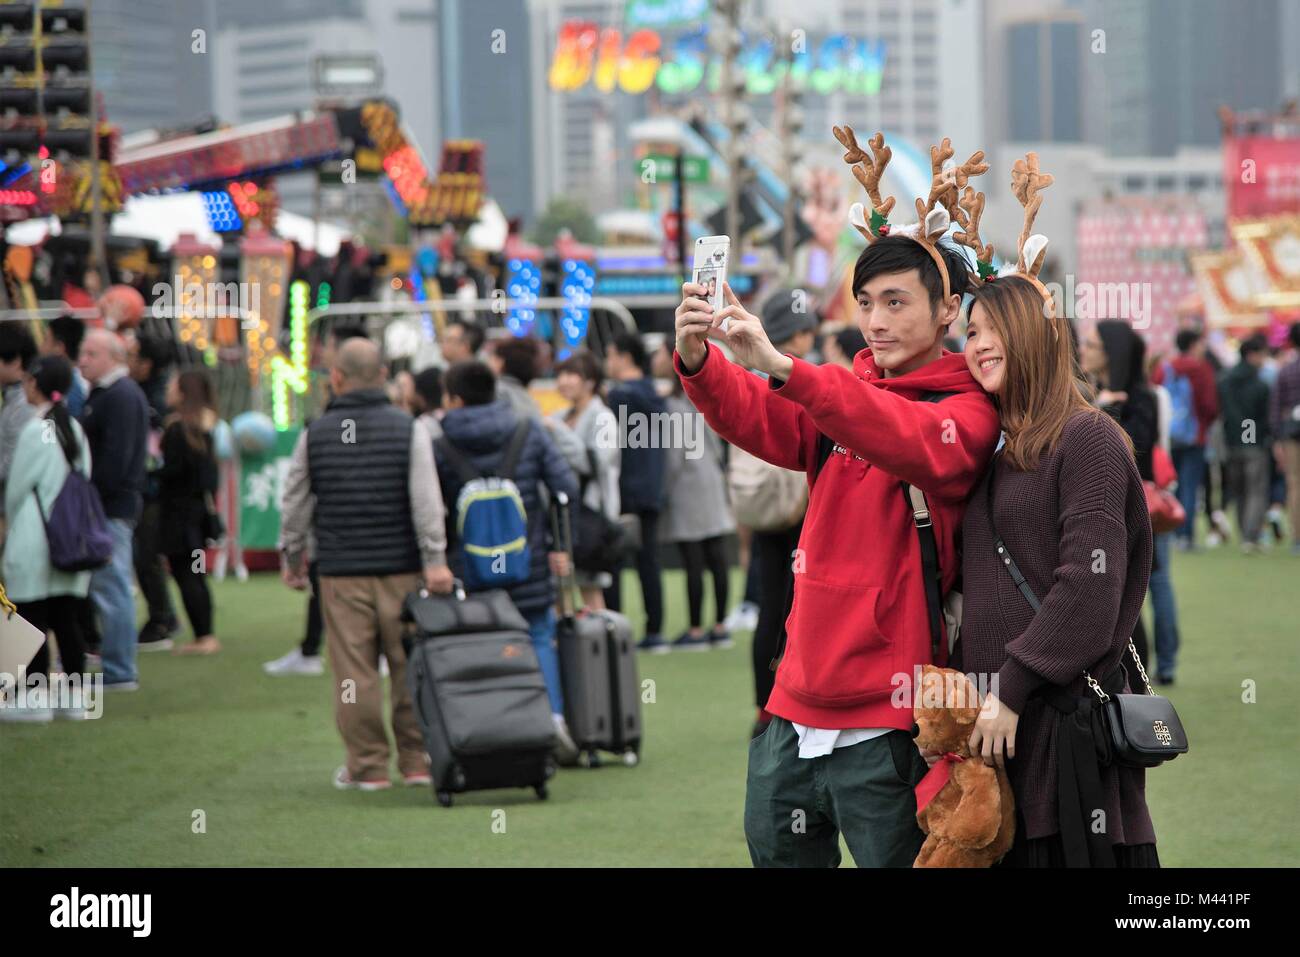 Ein Paar nimmt eine selfie an der AIA Europäischen Karneval am Heiligabend 2016, während das Smartphone auch ein pic von dem Paar enthält. Stockfoto